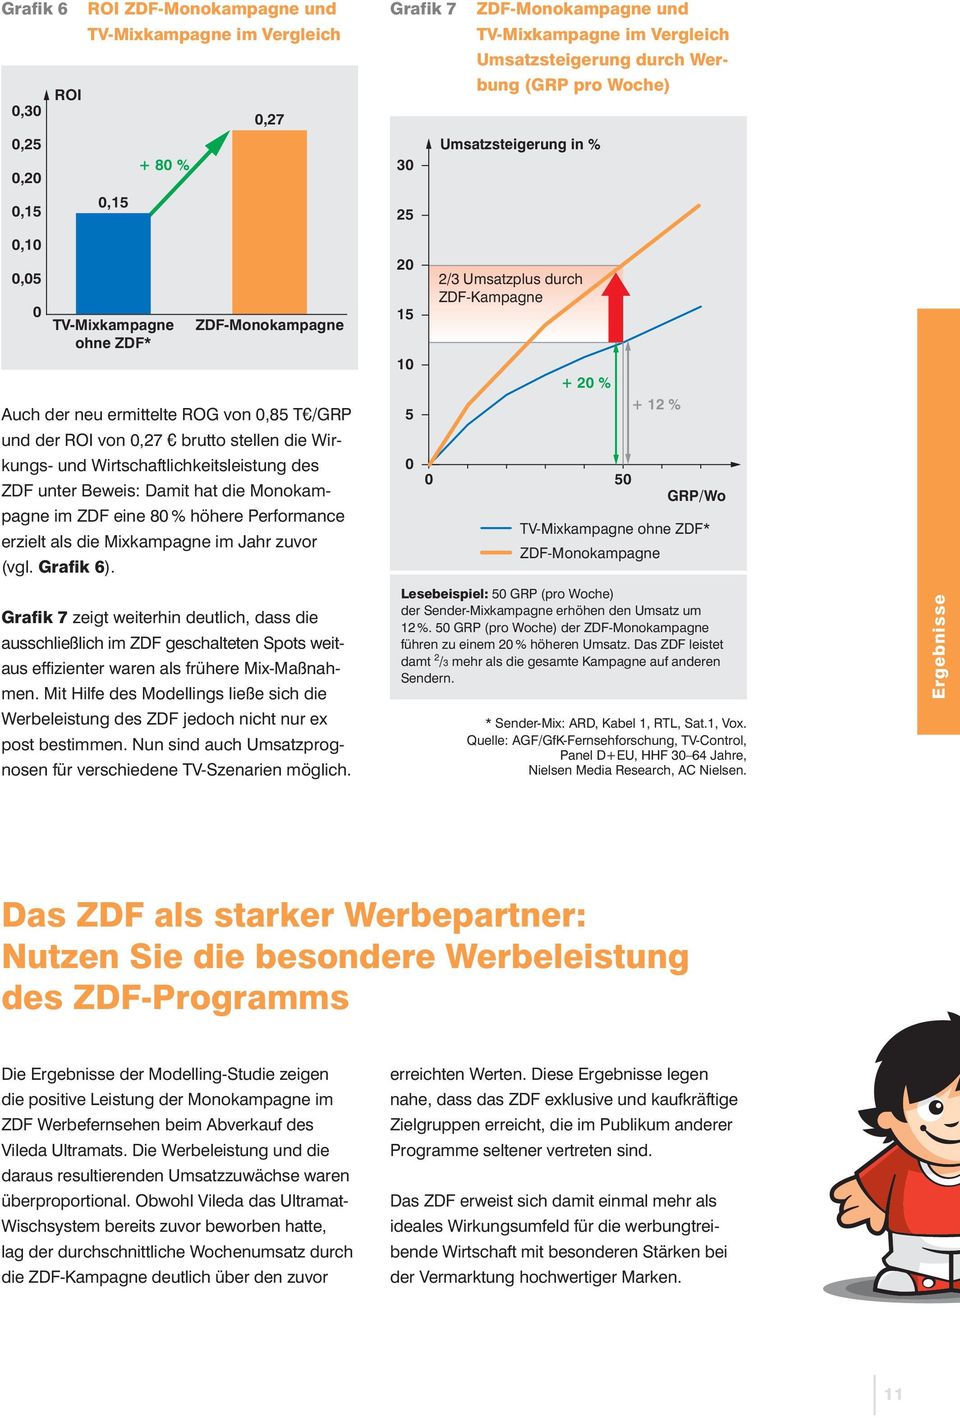 ZDF unter Beweis: Damit hat die Monokampagne im ZDF eine % höhere Performance erzielt als die Mixkampagne im Jahr zuvor (vgl. Grafik 6).